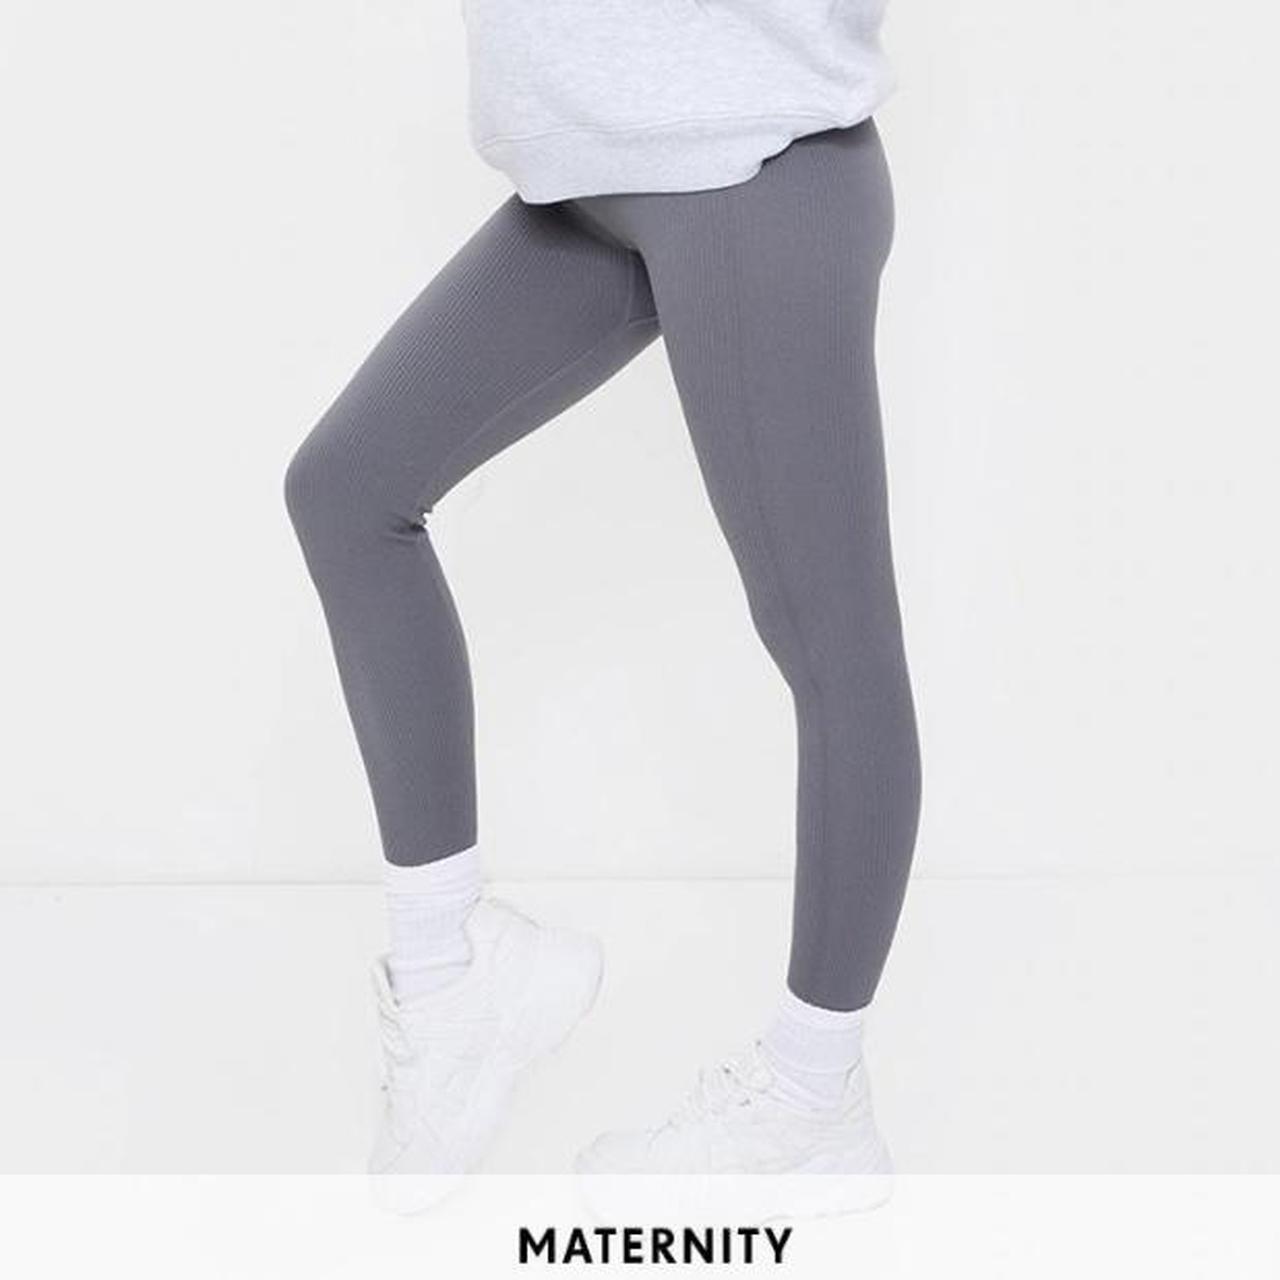 maternity #leggings #brandnew #prettylittlething - Depop